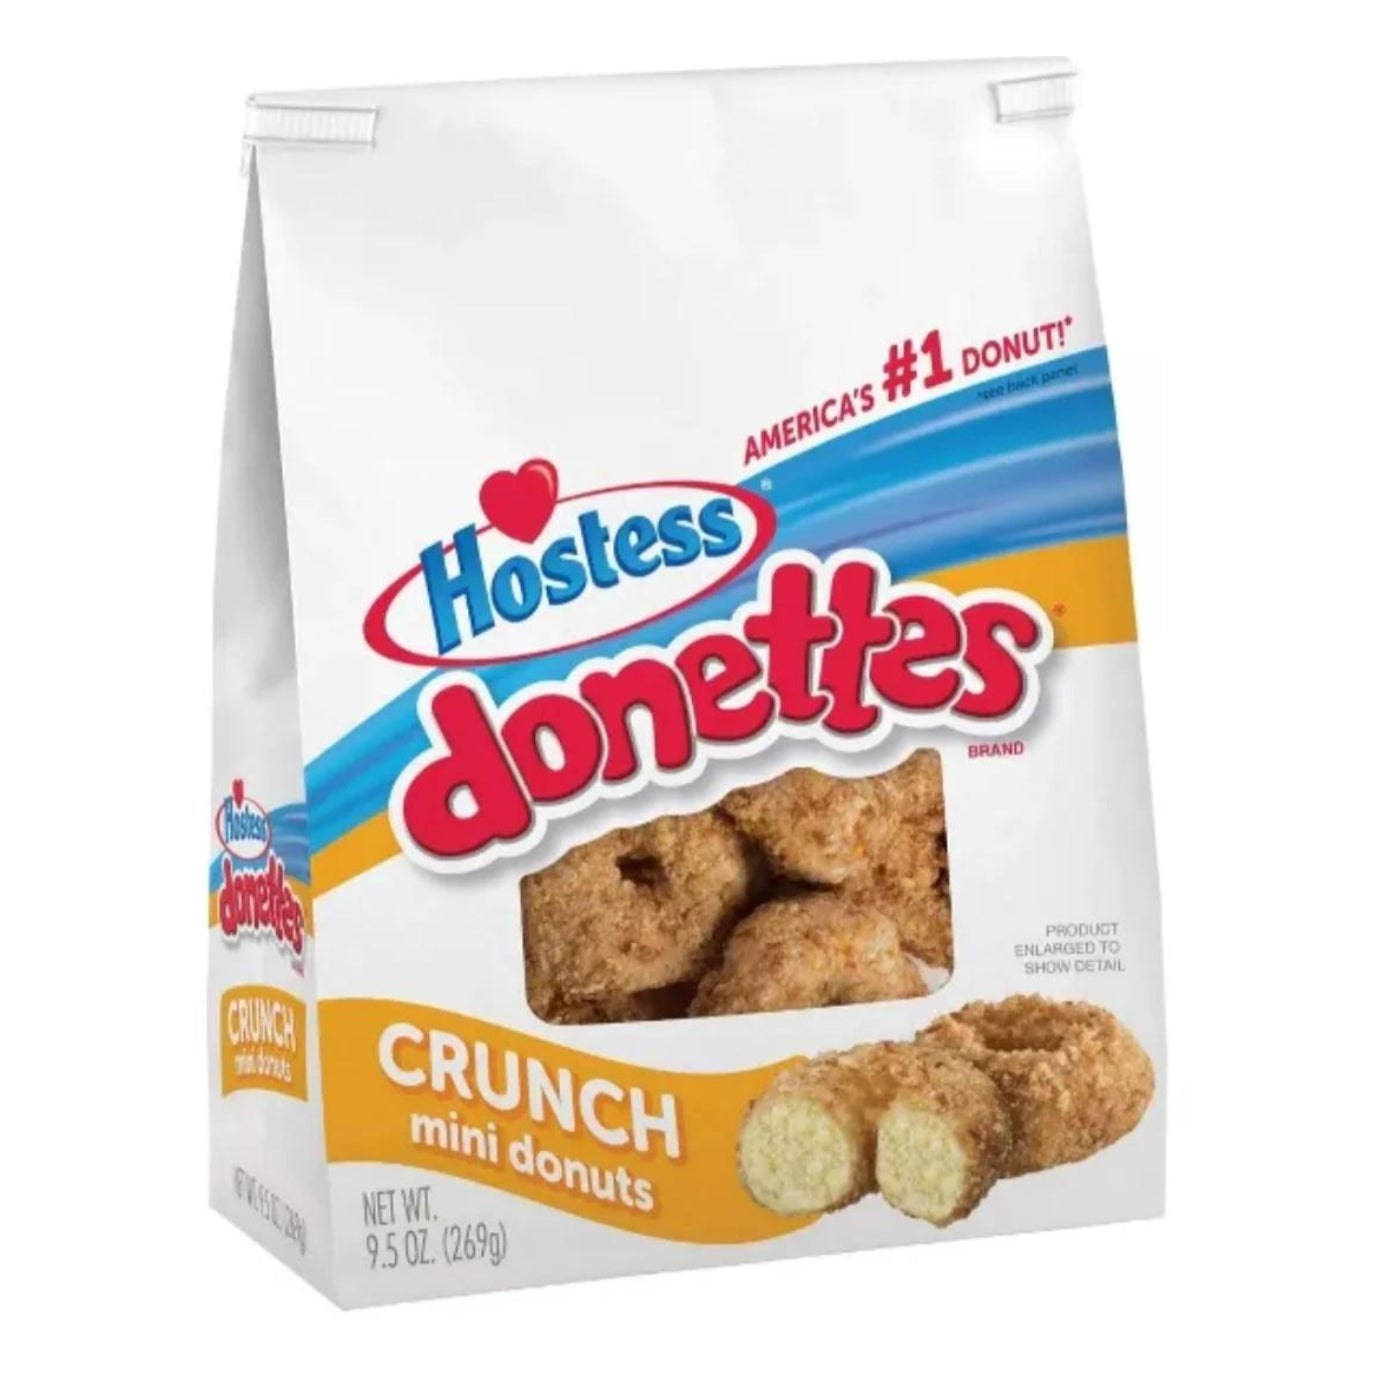 Hostess Donettes Crunch Bag 269g (USA)